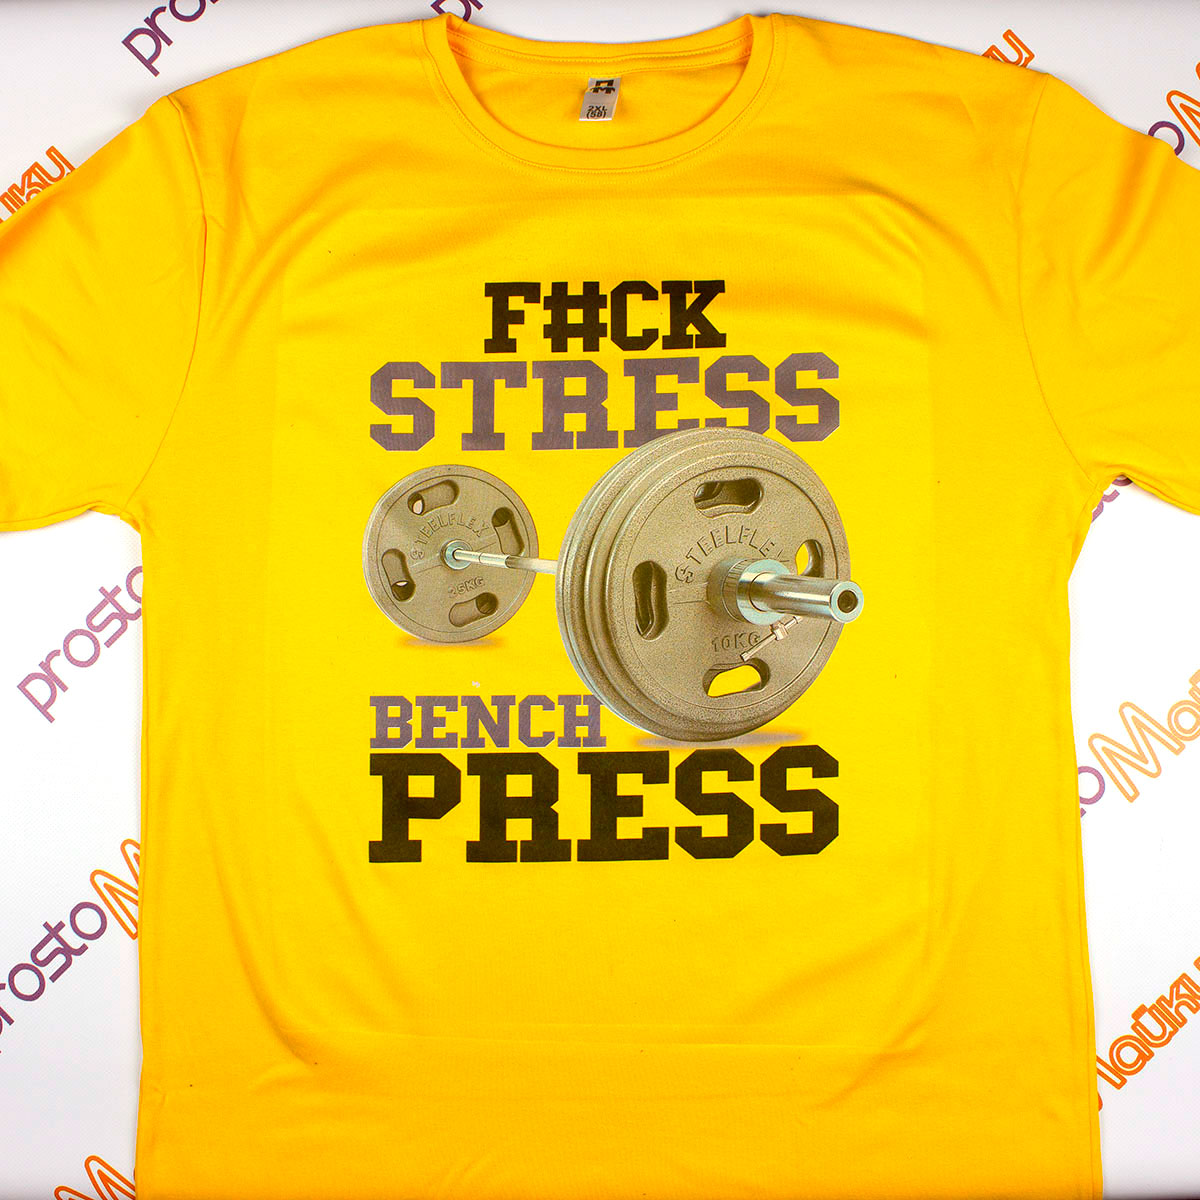 Детская футболка для качалки "F#ck stress - bench press"